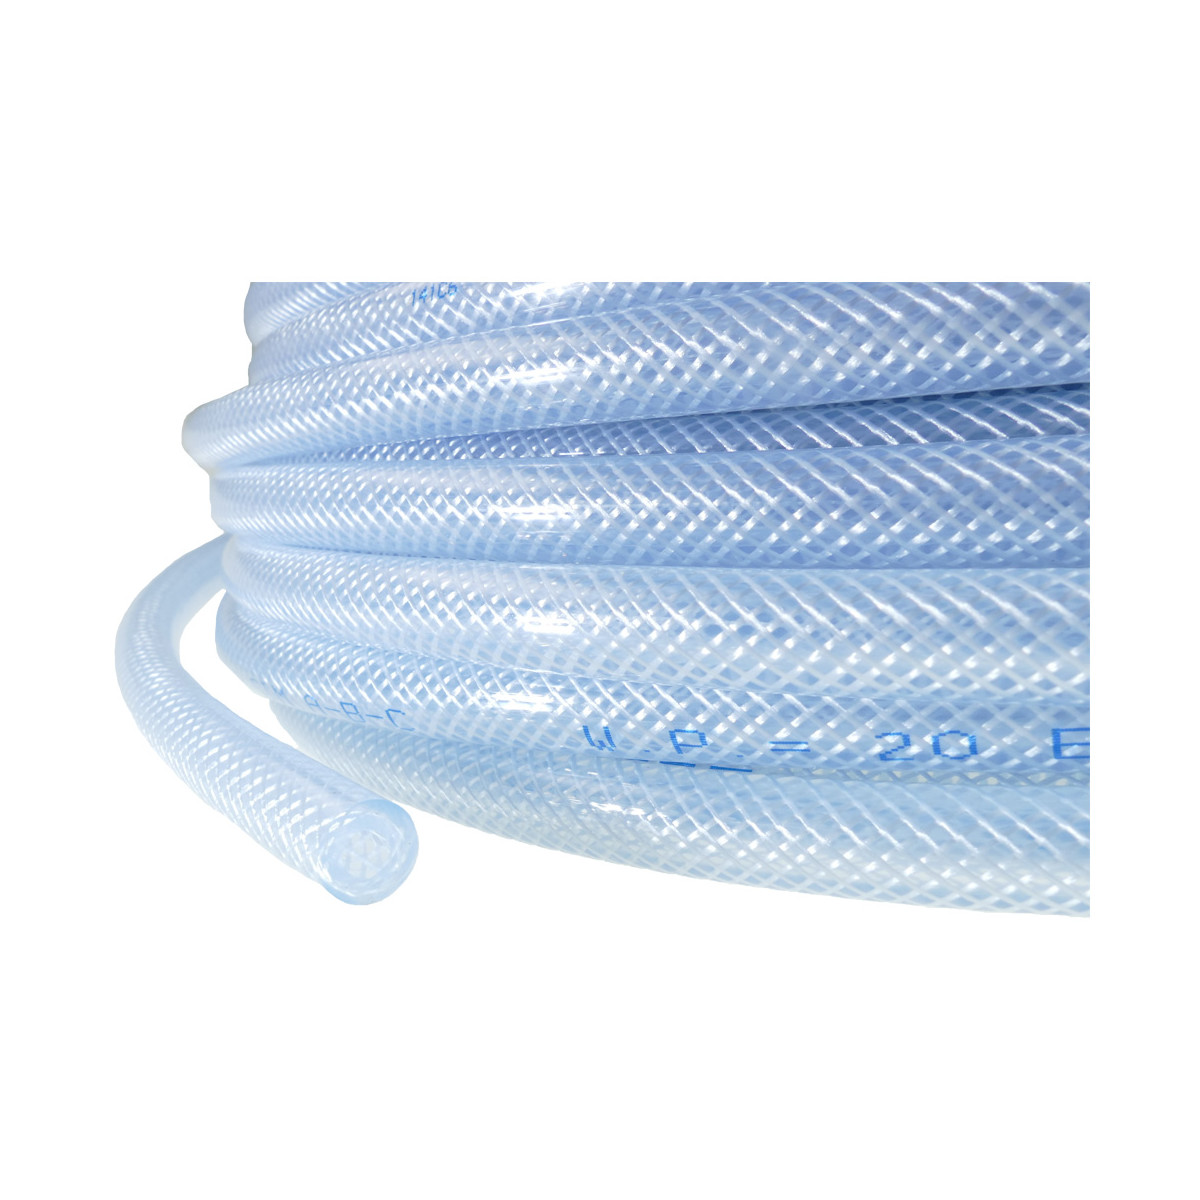 Garditech Cristall 2500 Glasklarer PVC-Schlauch ohne Gewebeeinlage  Innendurchmesser 6 mm Außendurchmesser 10 mm Länge 100m